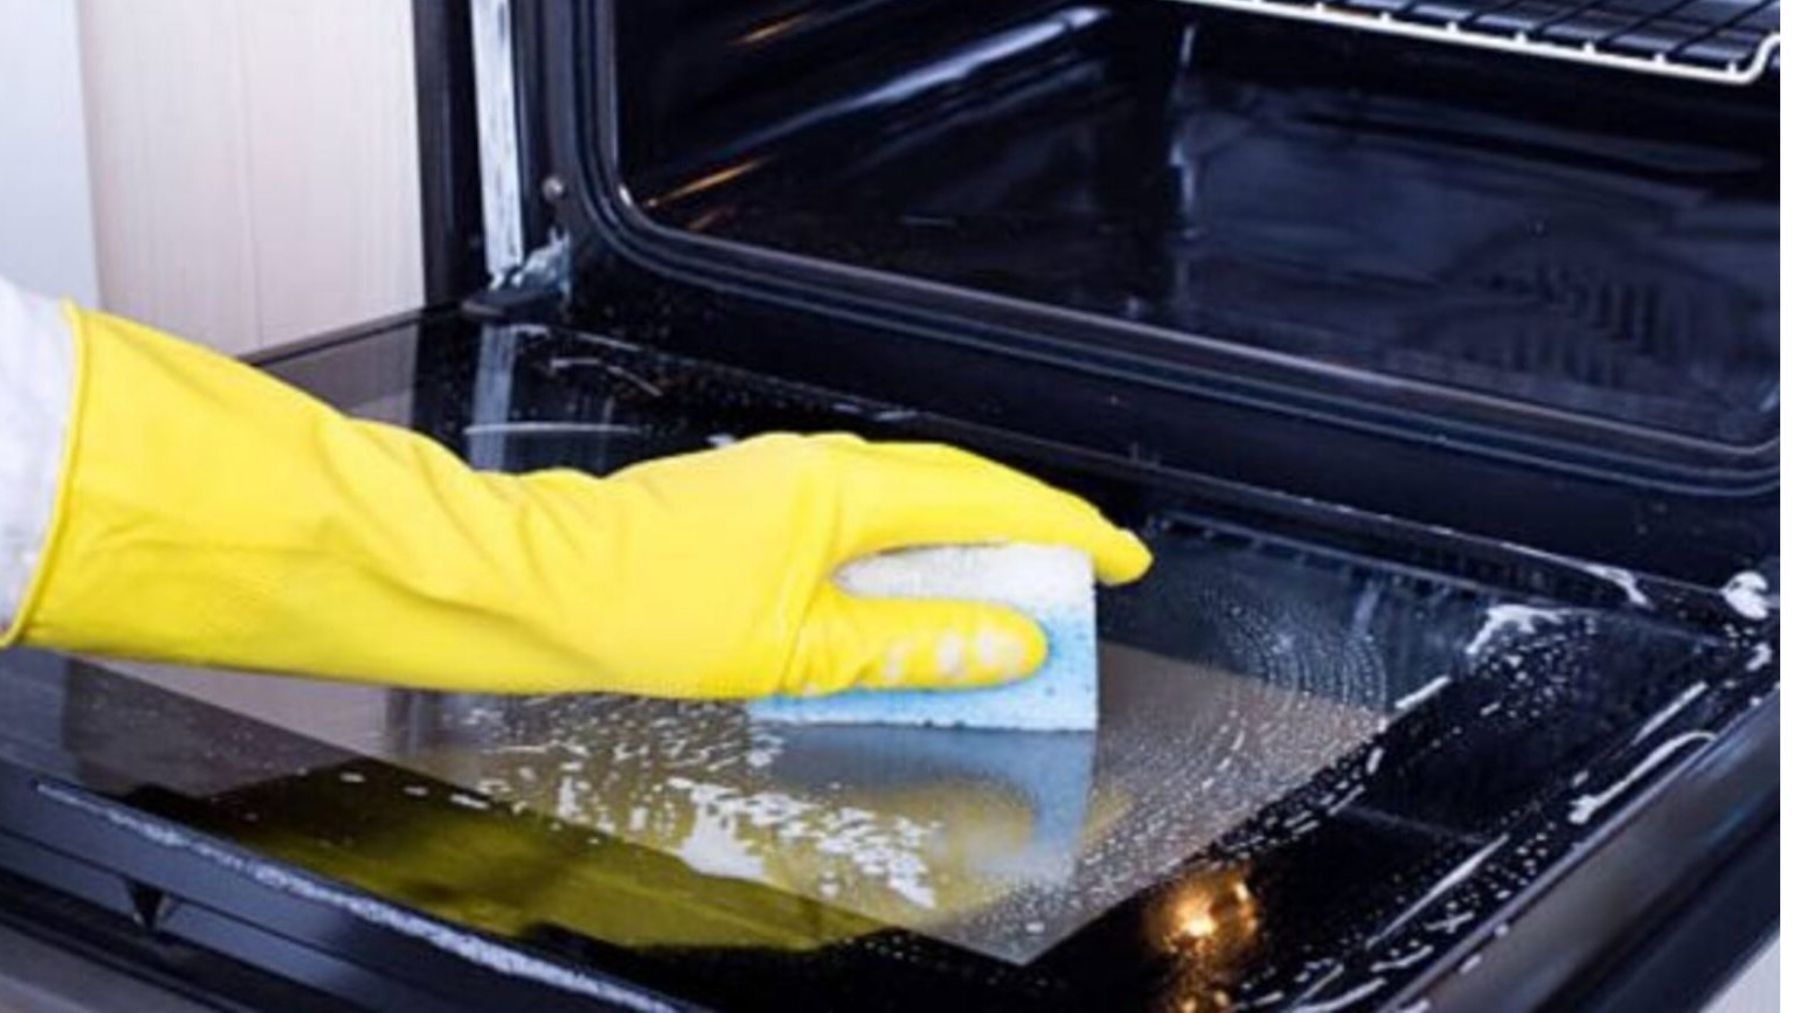 Trucos caseros para limpiar el horno fácilmente y sin productos químicos